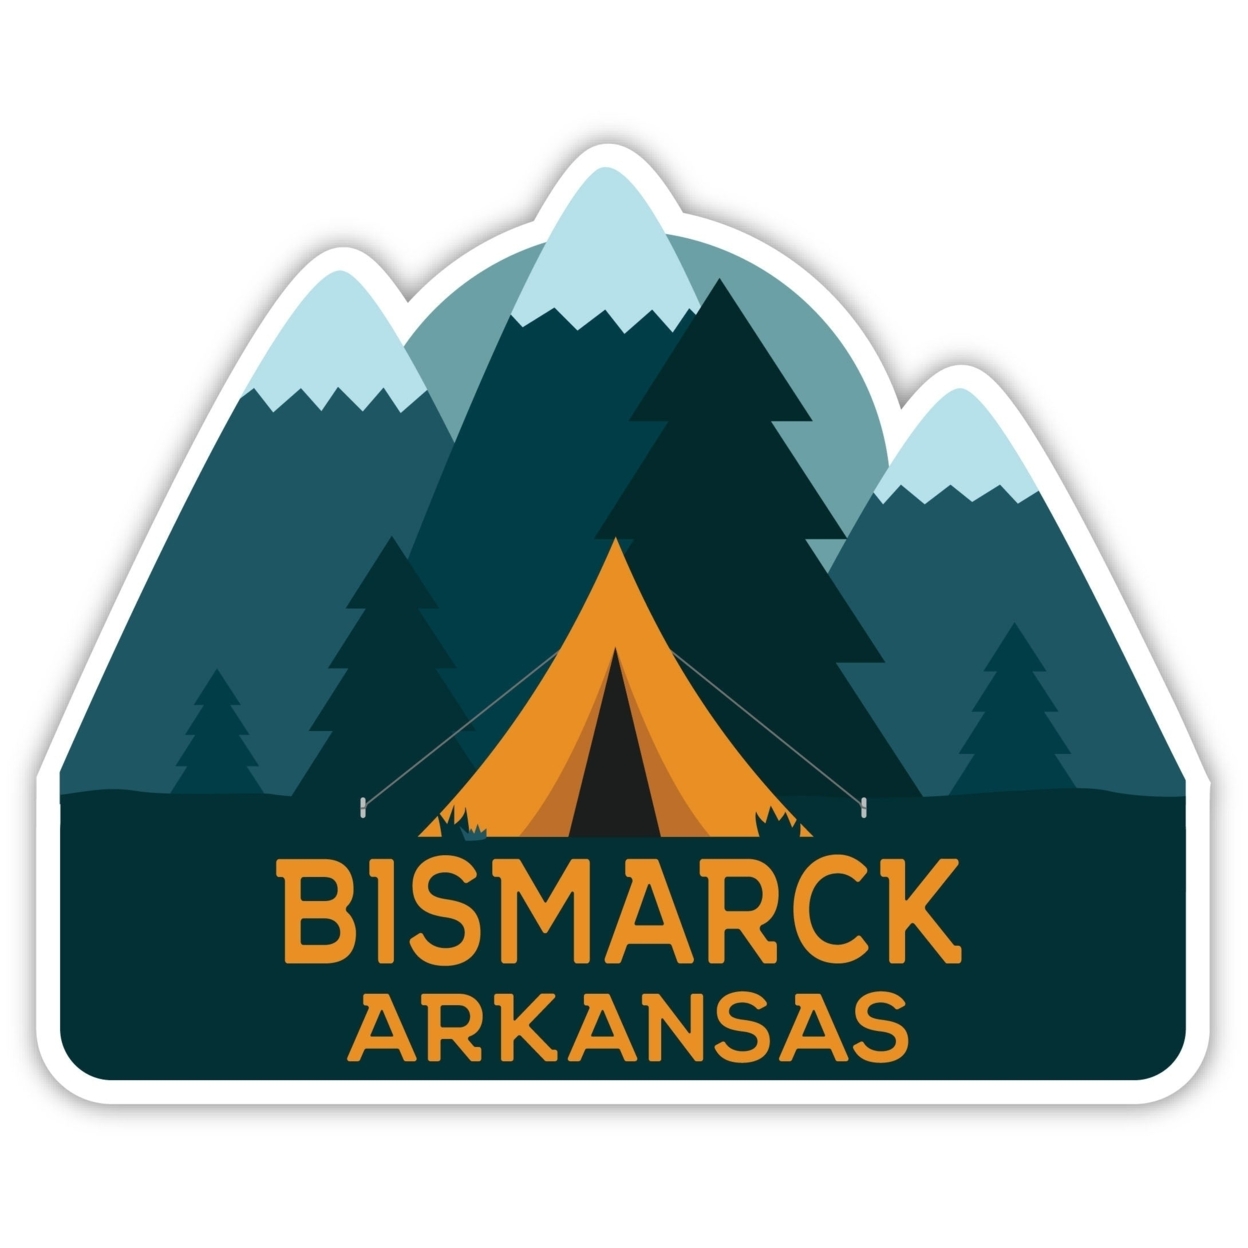 Bismarck Arkansas Souvenir Decorative Stickers (Choose Theme And Size) - Single Unit, 4-Inch, Tent